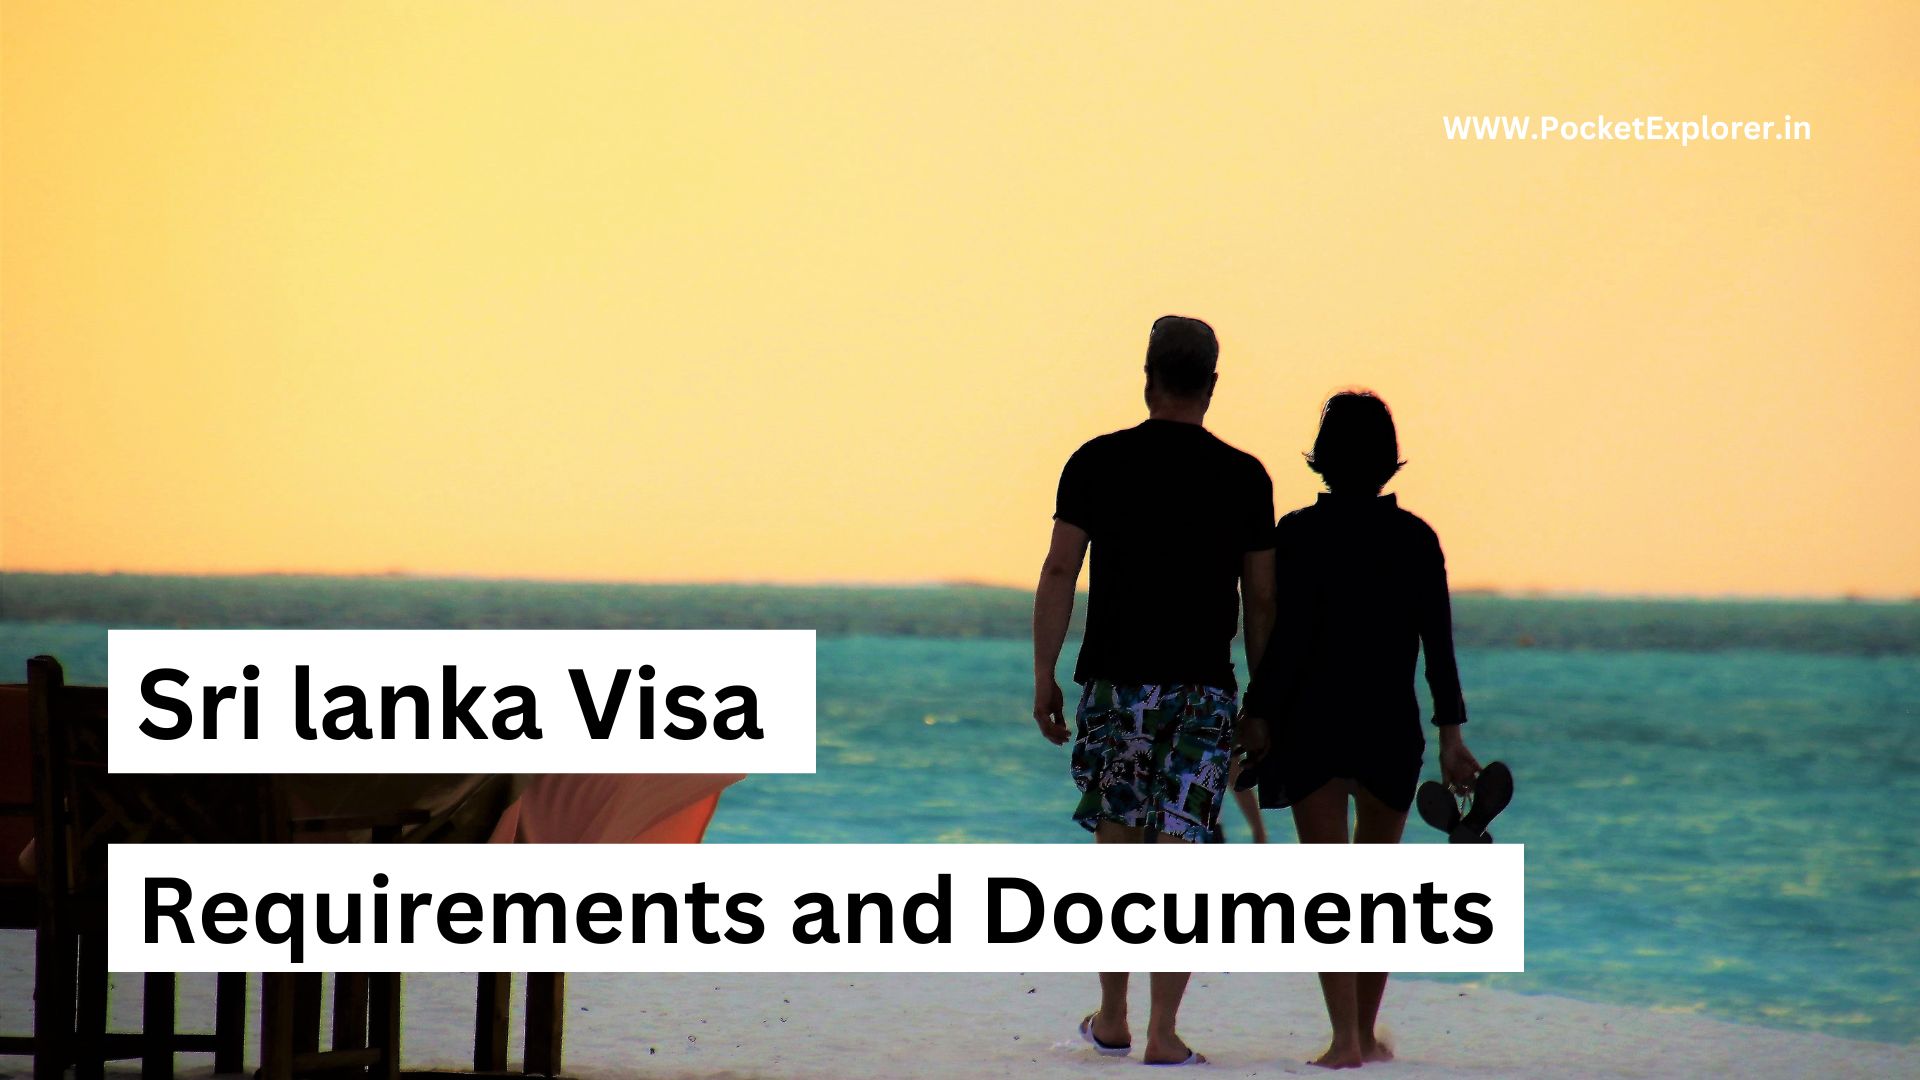 श्रीलंका वीसा क्या है और इसे कैसे प्राप्त करें ? Sri lanka visa